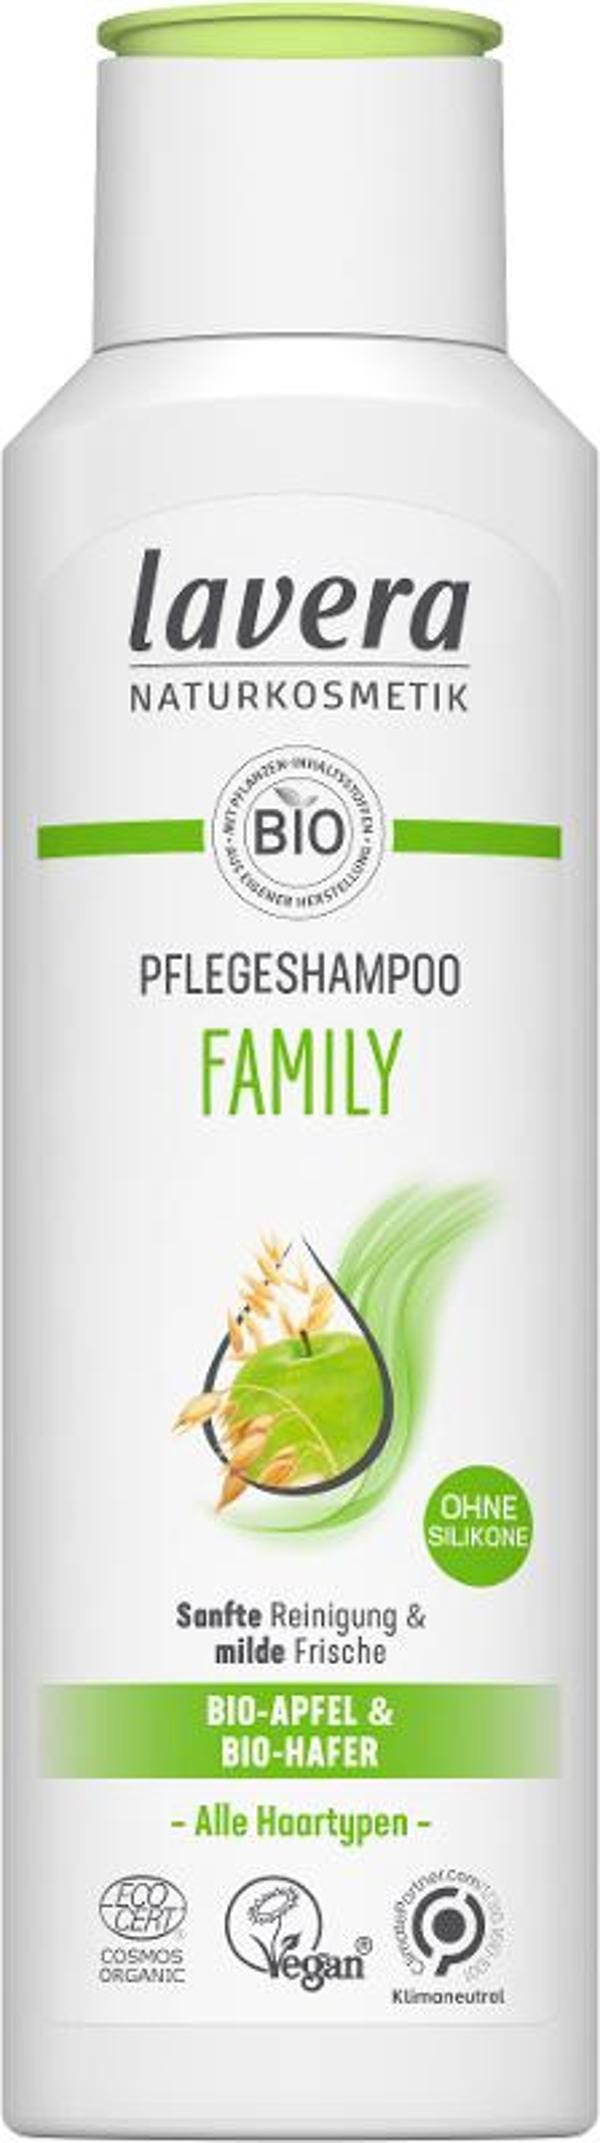 Produktfoto zu Lavera Shampoo Family 250ml